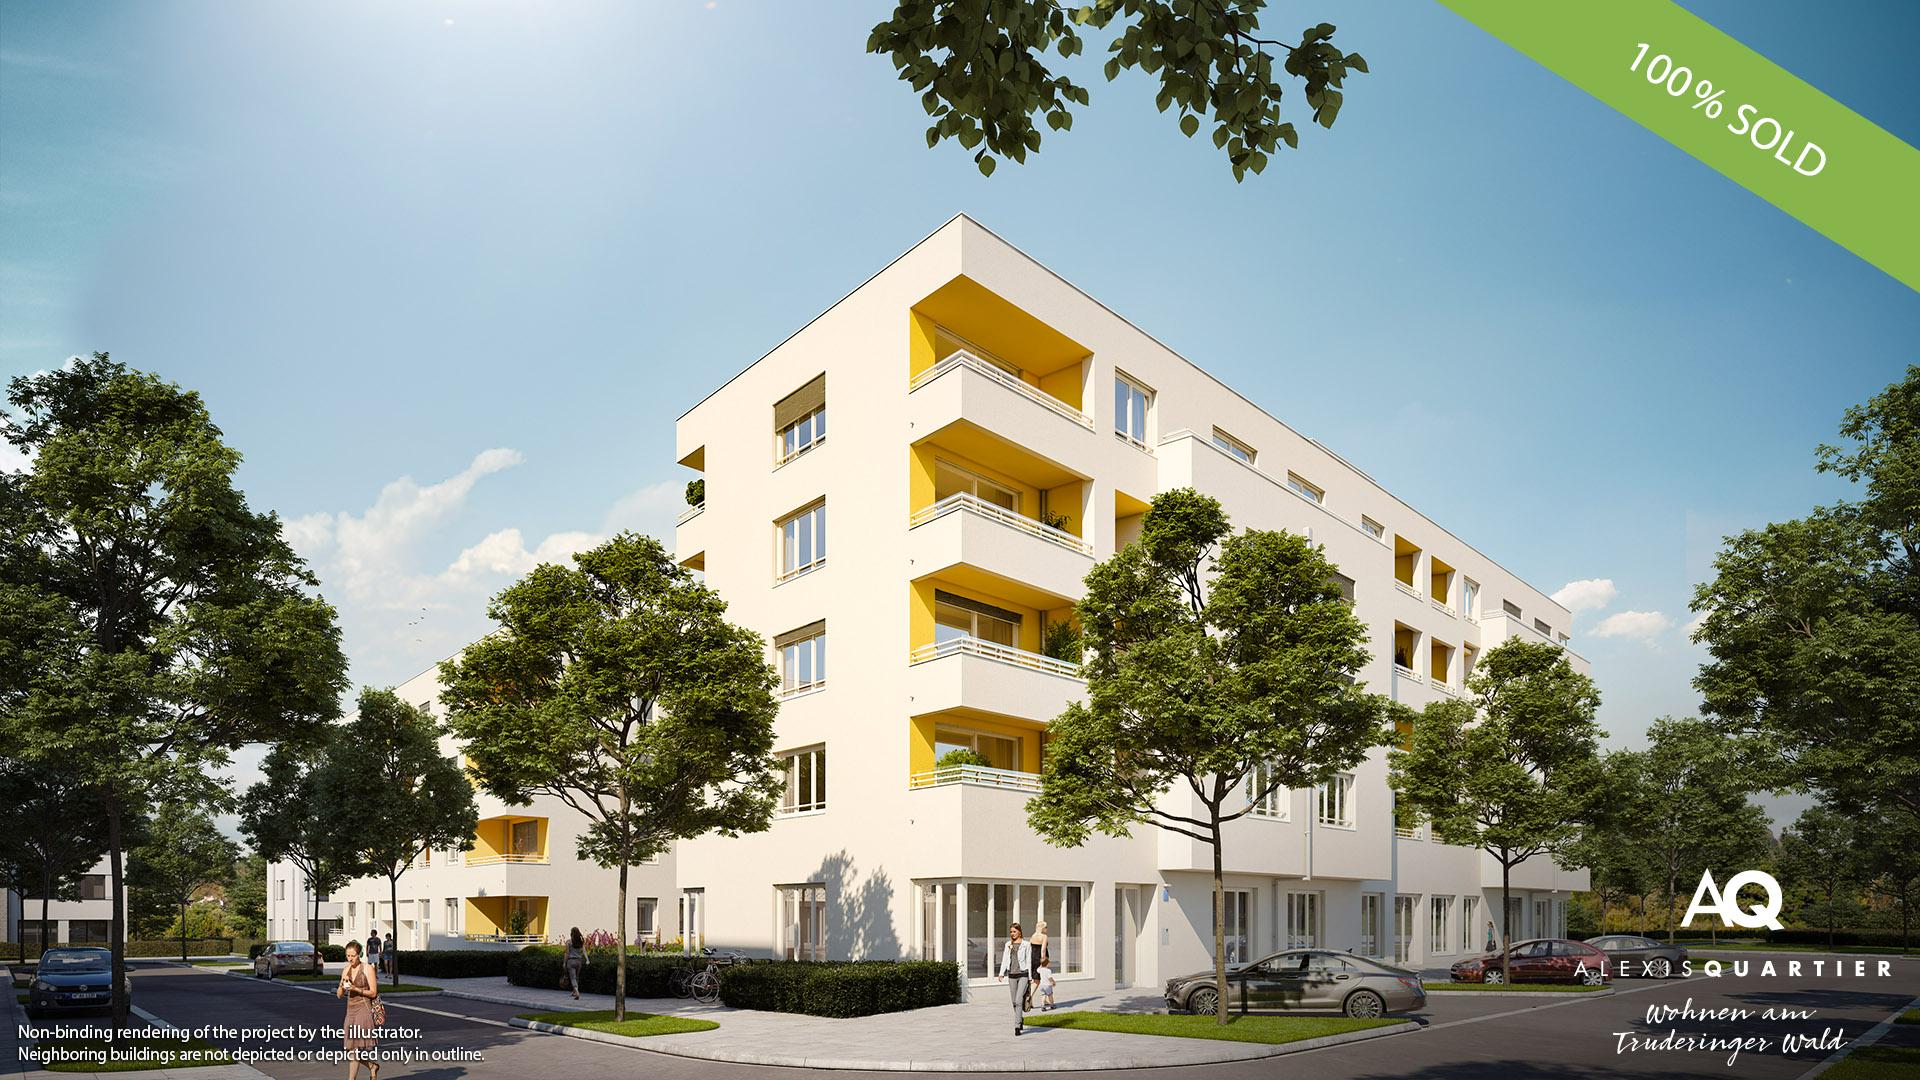 'ALEXISQUARTIER – Wohnen am Truderinger Wald' in Munich-Perlach: All condominiums sold